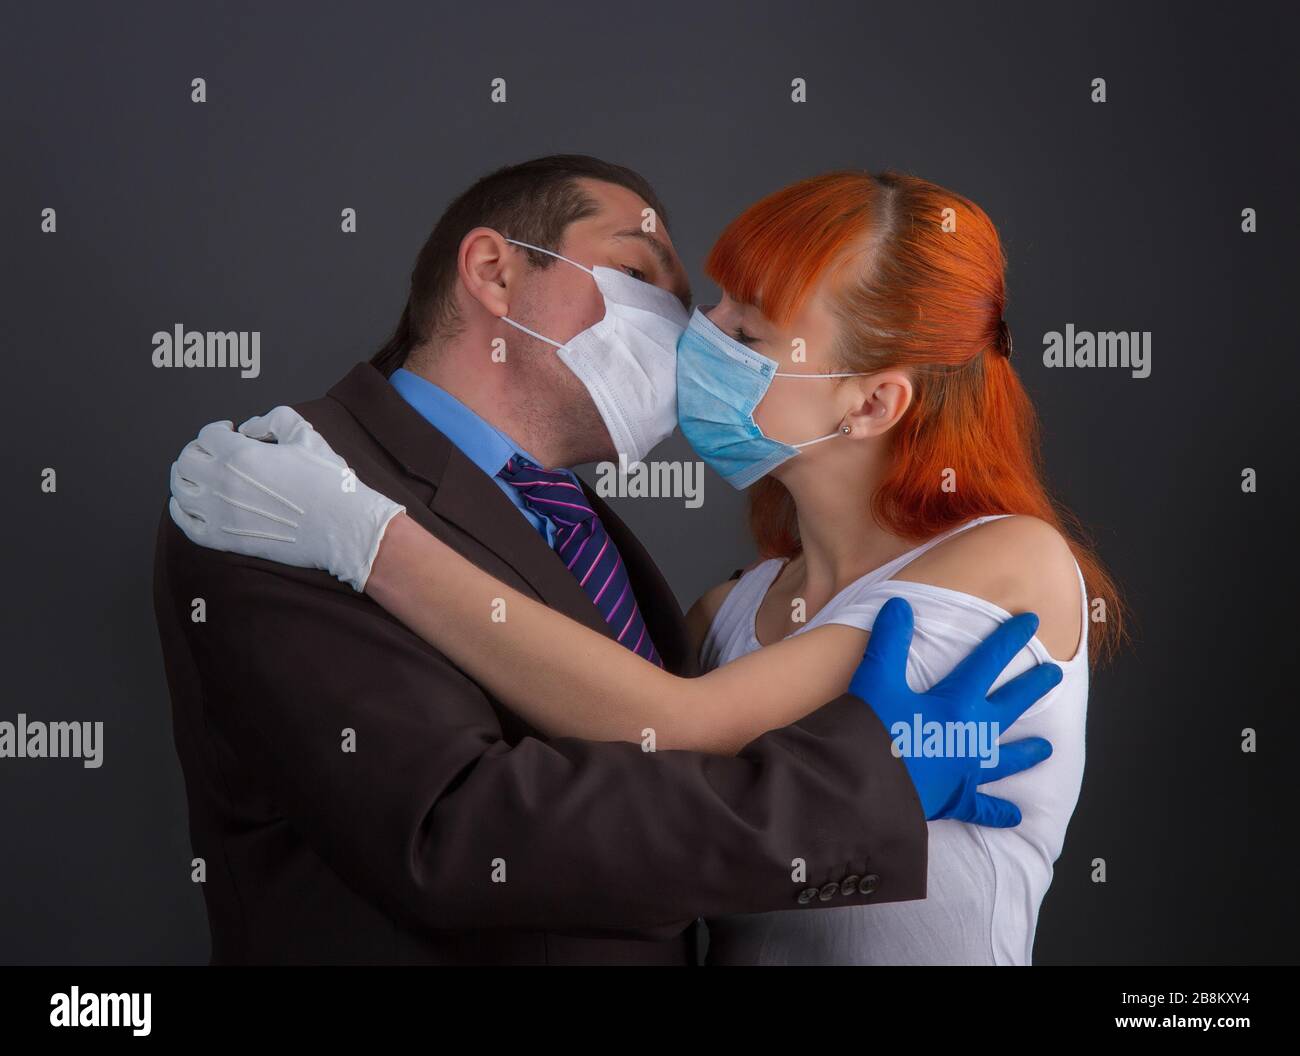 homme et fille masqués Banque D'Images